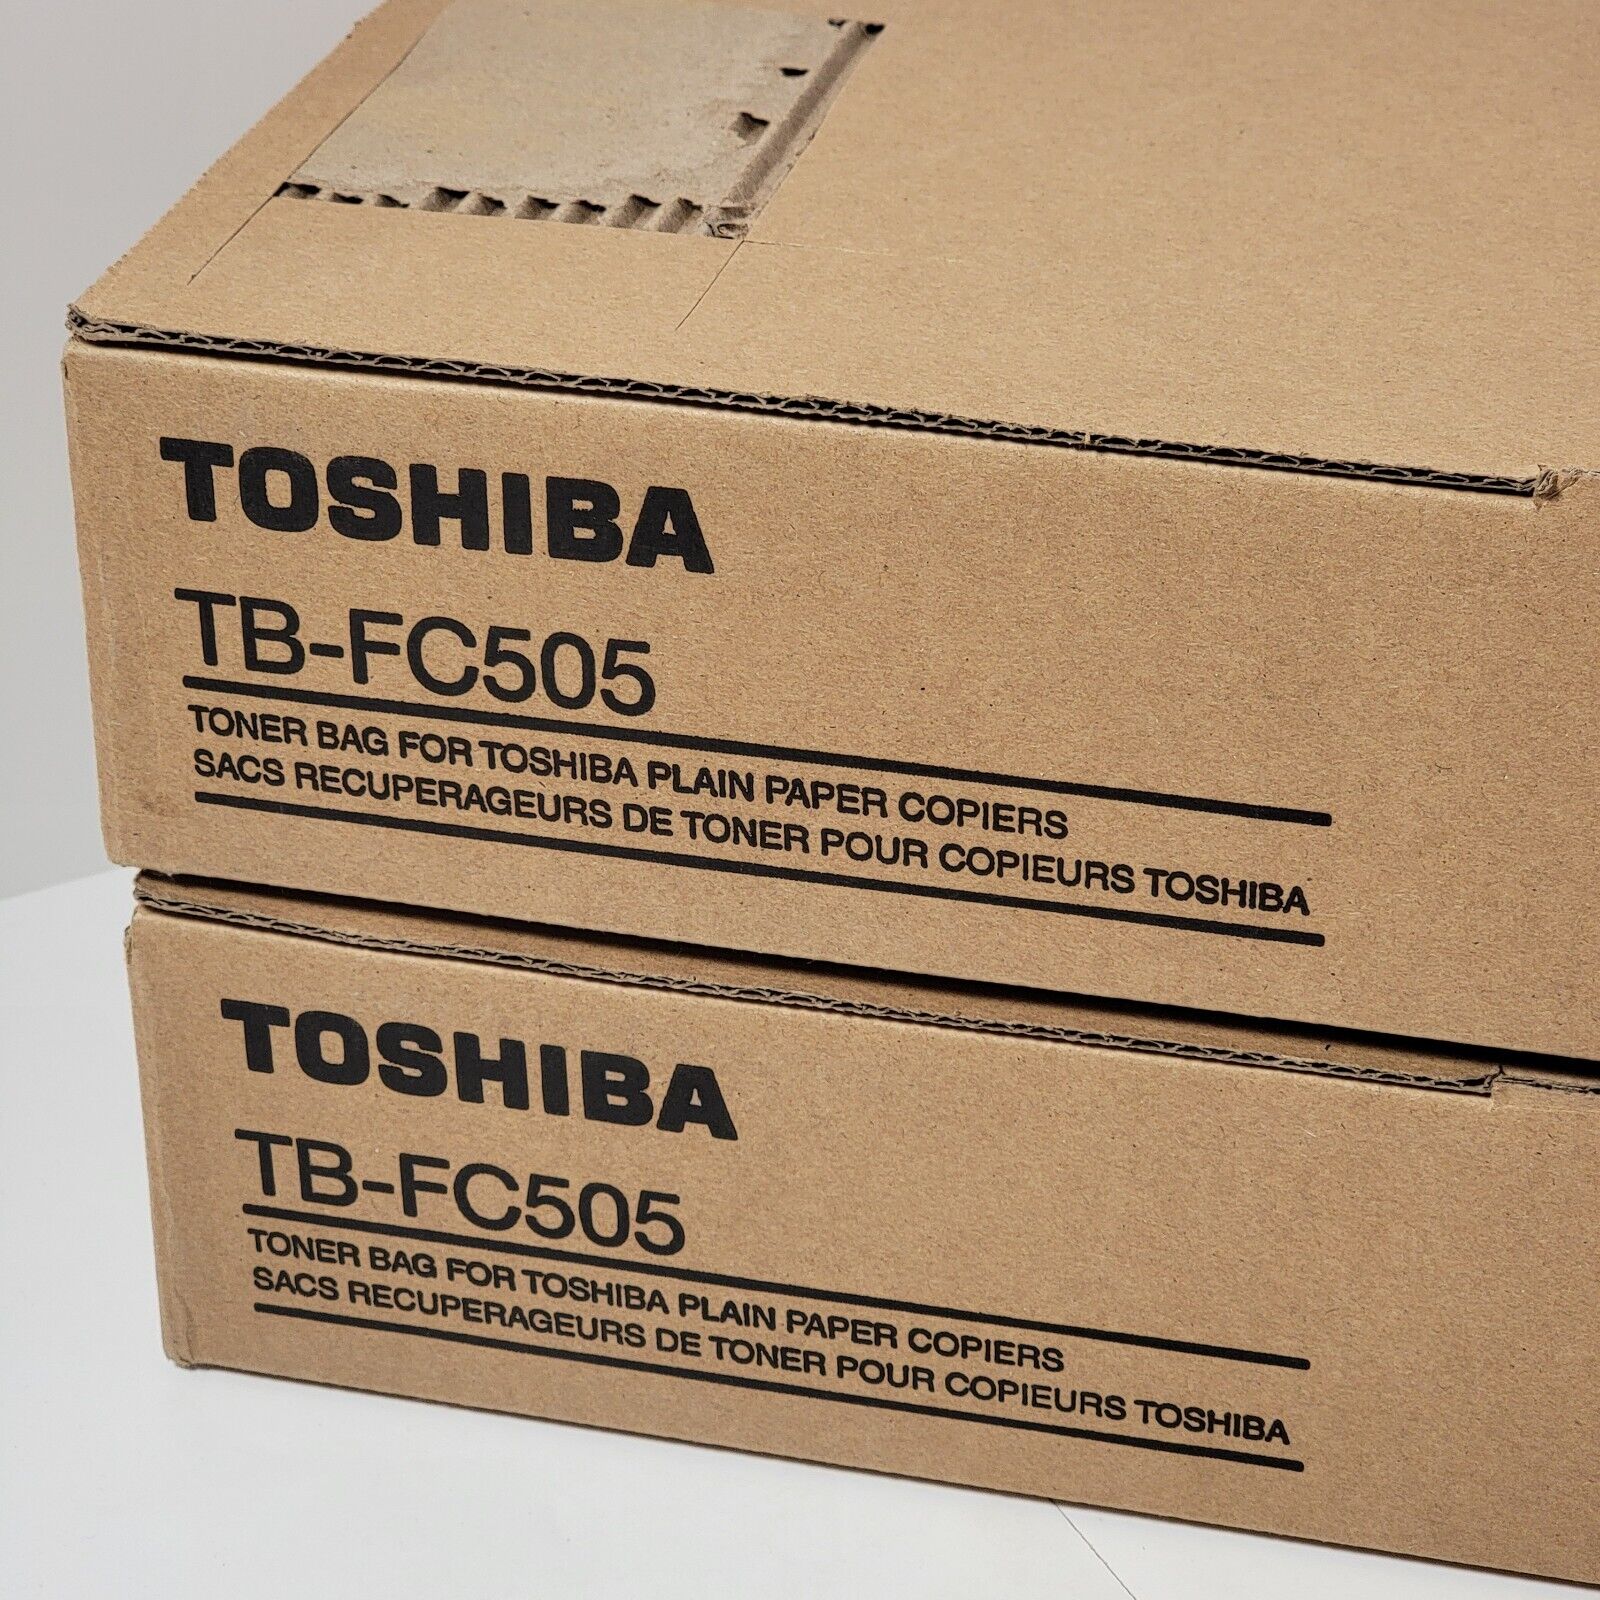 Lot of 2 Toshiba TB-FC505 Toner Bag For Toshiba Plain Paper Copiers Cat#JK